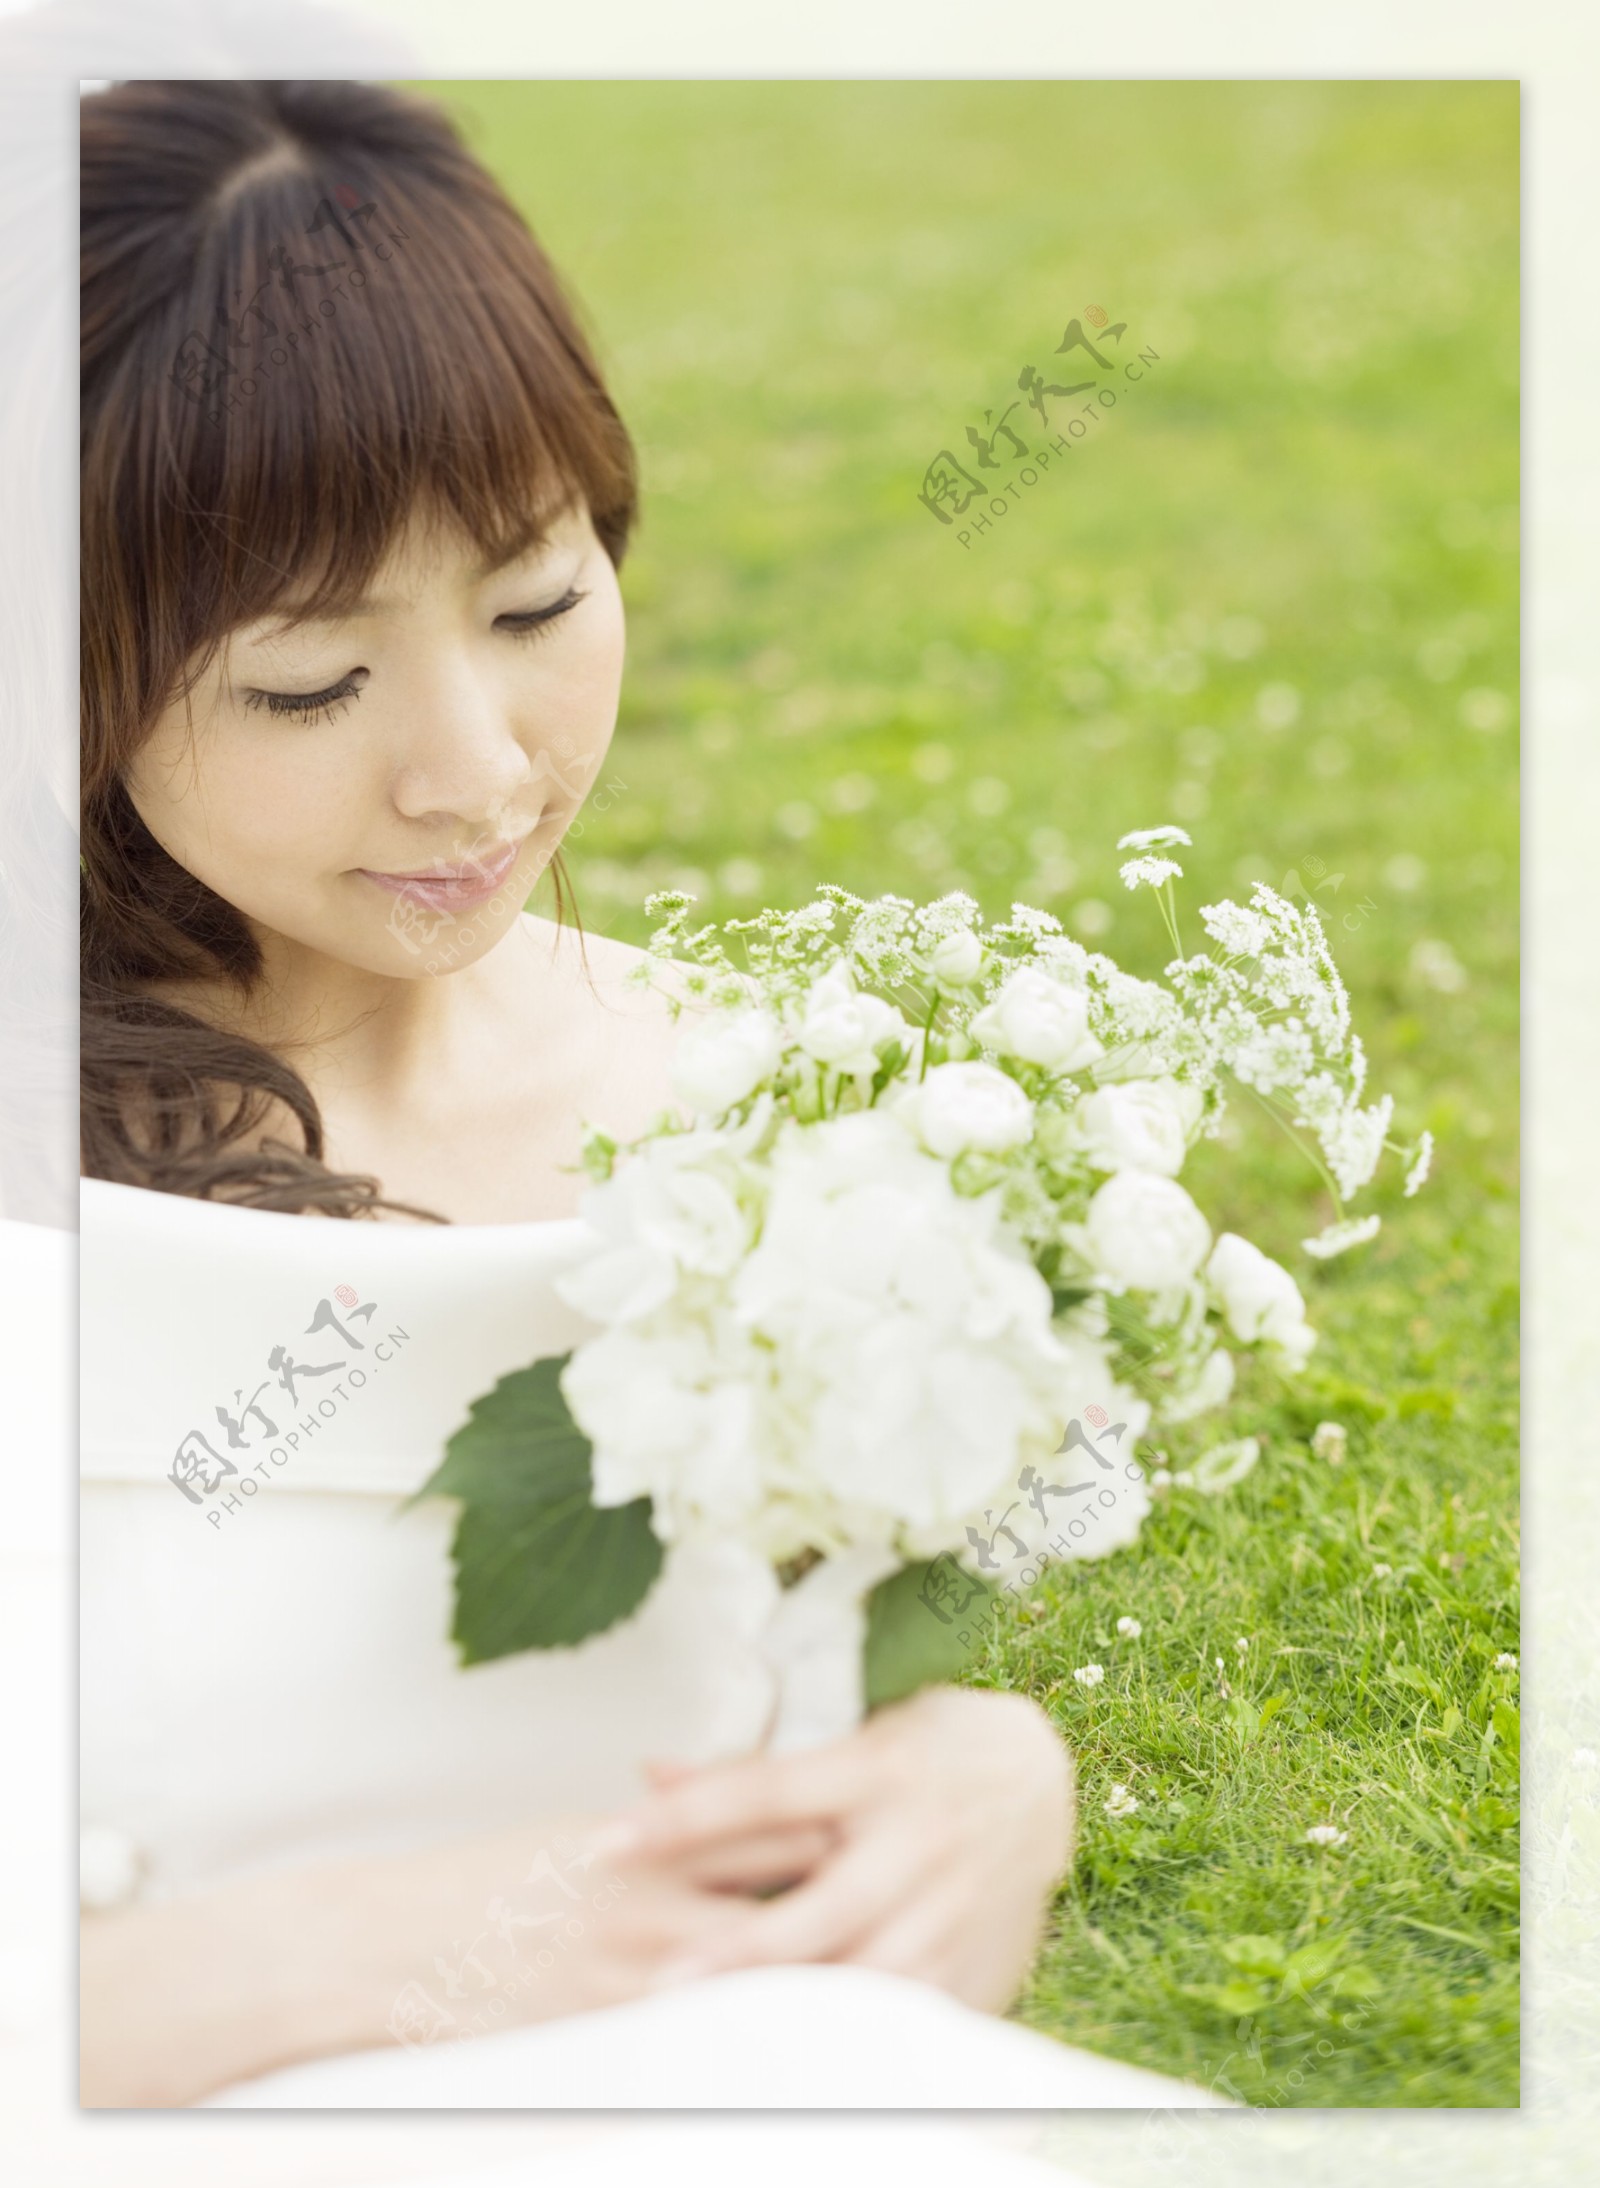 手拿鲜花的清纯美女 3840×5760 - 免费可商用图片 - CC0素材网